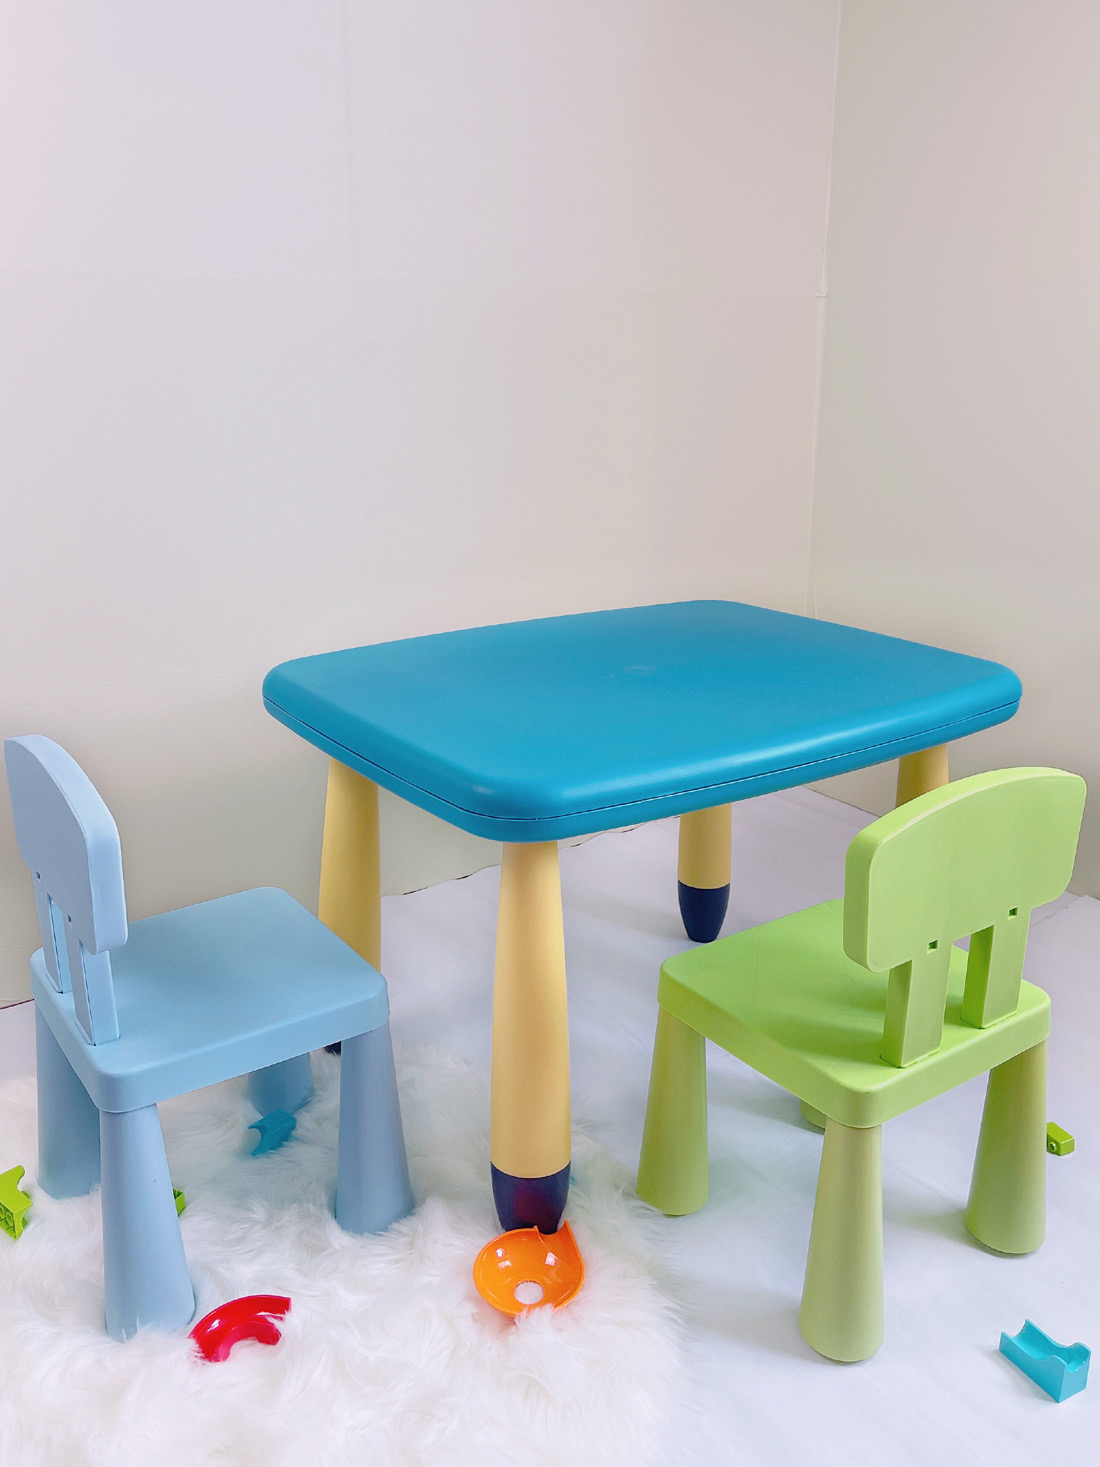 新品儿童桌椅早教桌椅宝宝幼儿园学习小桌椅玩具游戏桌加厚